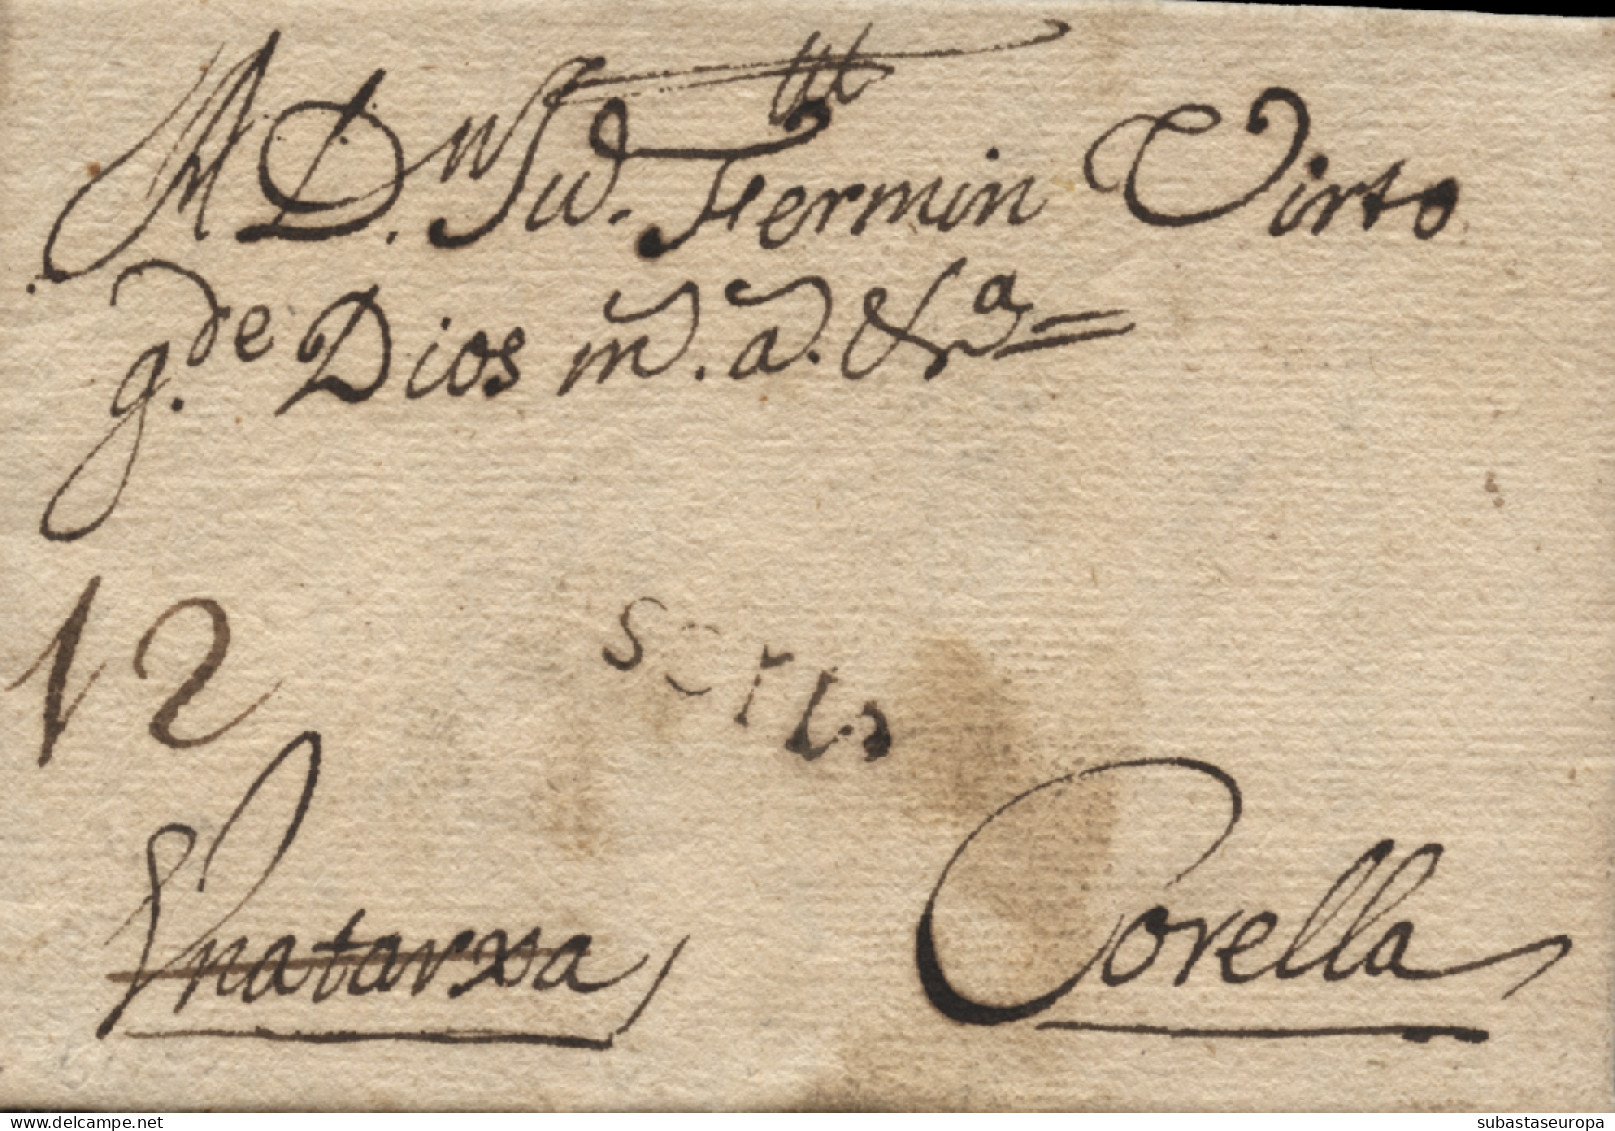 D.P. 3. 1739 (FEB). Carta De Vinuesa A Corella. Marca De Soria Nº 11N. Rara. - ...-1850 Préphilatélie